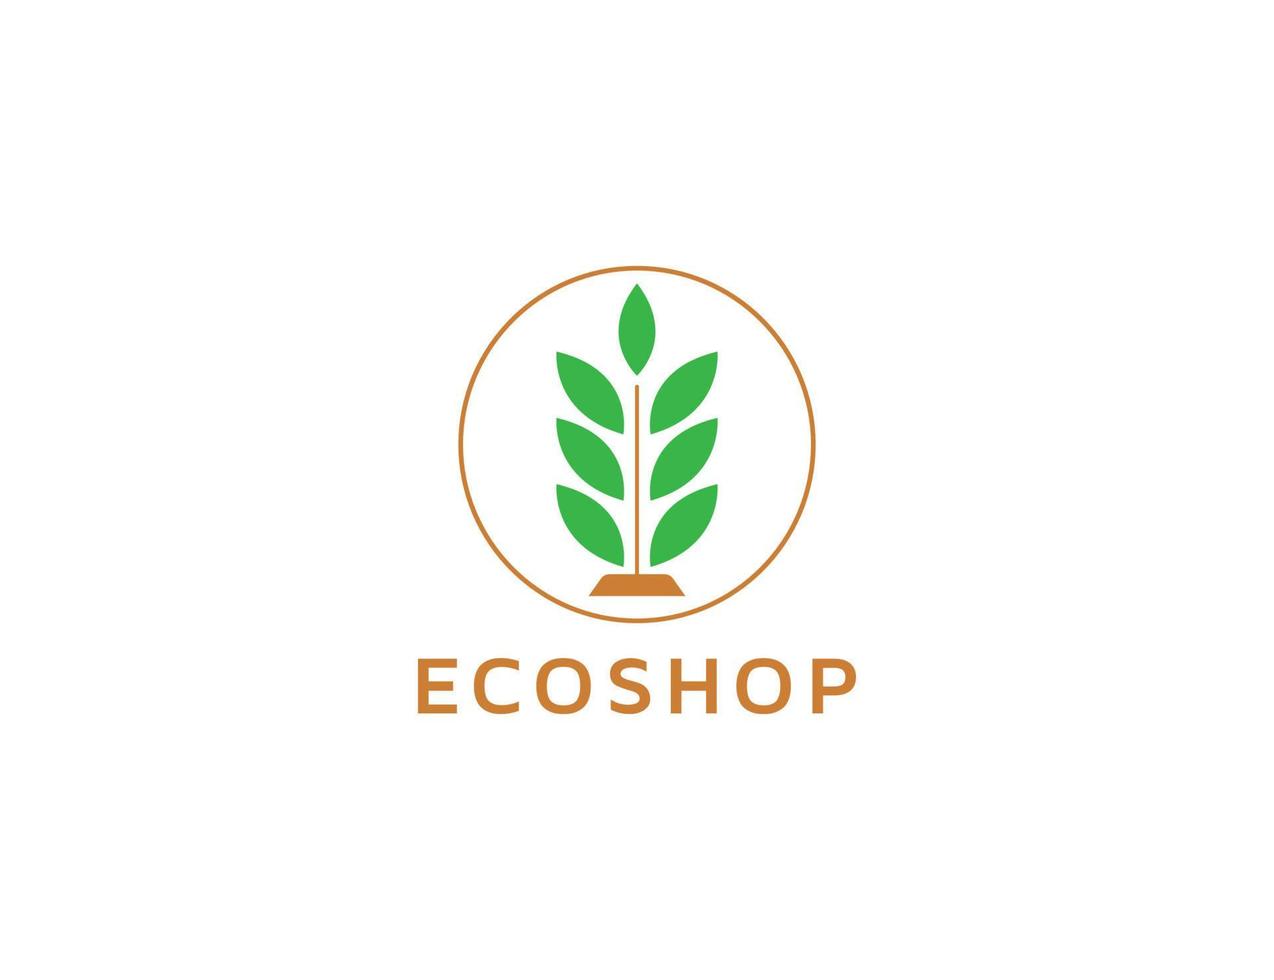 Eco shop logo with leaf illustration vector